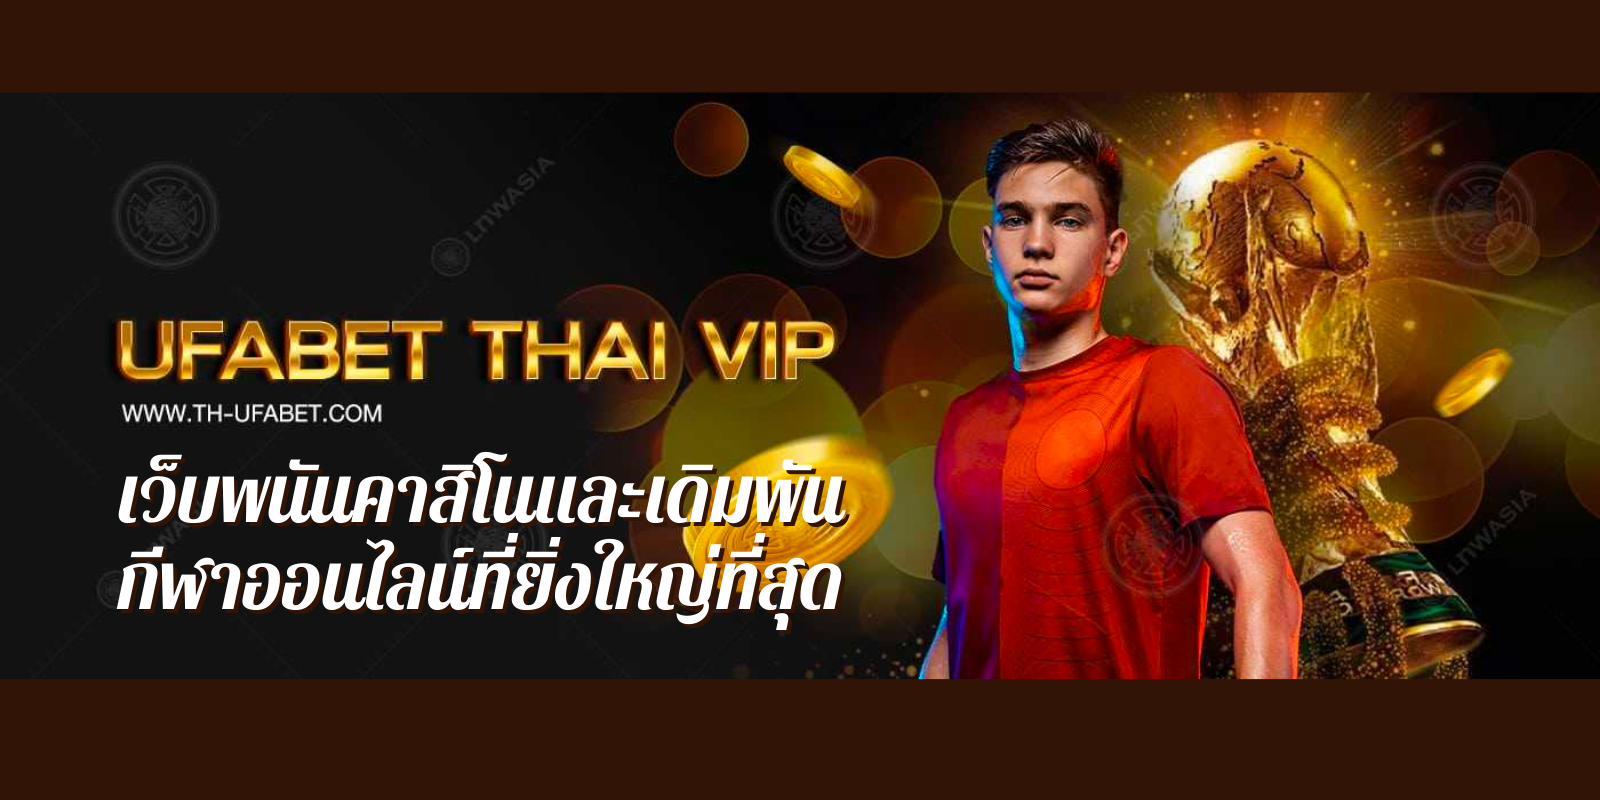 ufabet thaivip เว็บพนันคาสิโนและเดิมพันกีฬาออนไลน์ที่ยิ่งใหญ่ที่สุด